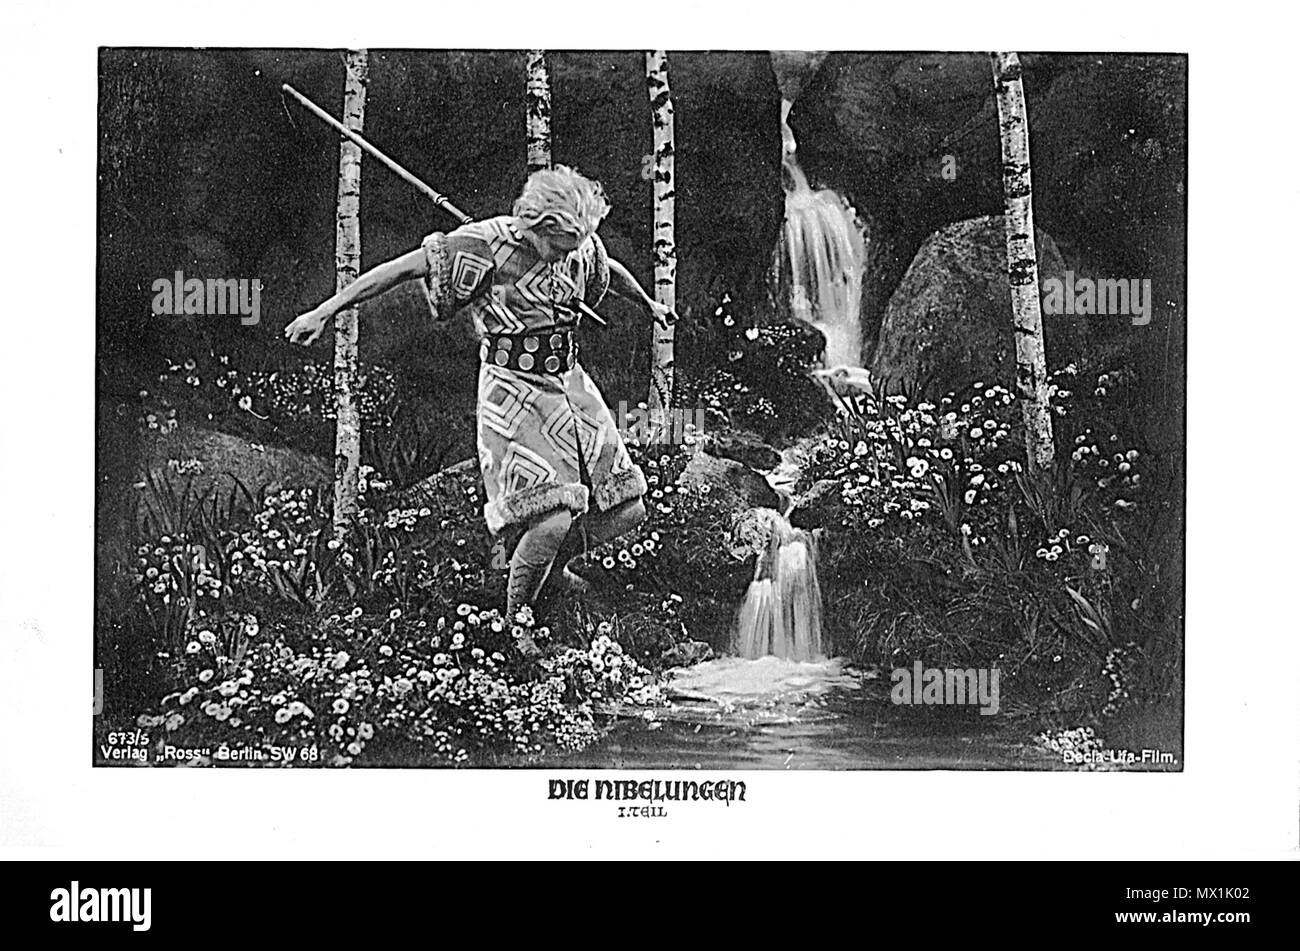 . Décès Siegfrieds.jpg . vers 1924. producteur Fritz Lang.Siegfried par Paul Richter. Restauration par Vitold Mouratov Siegfrieds 558 décès Banque D'Images